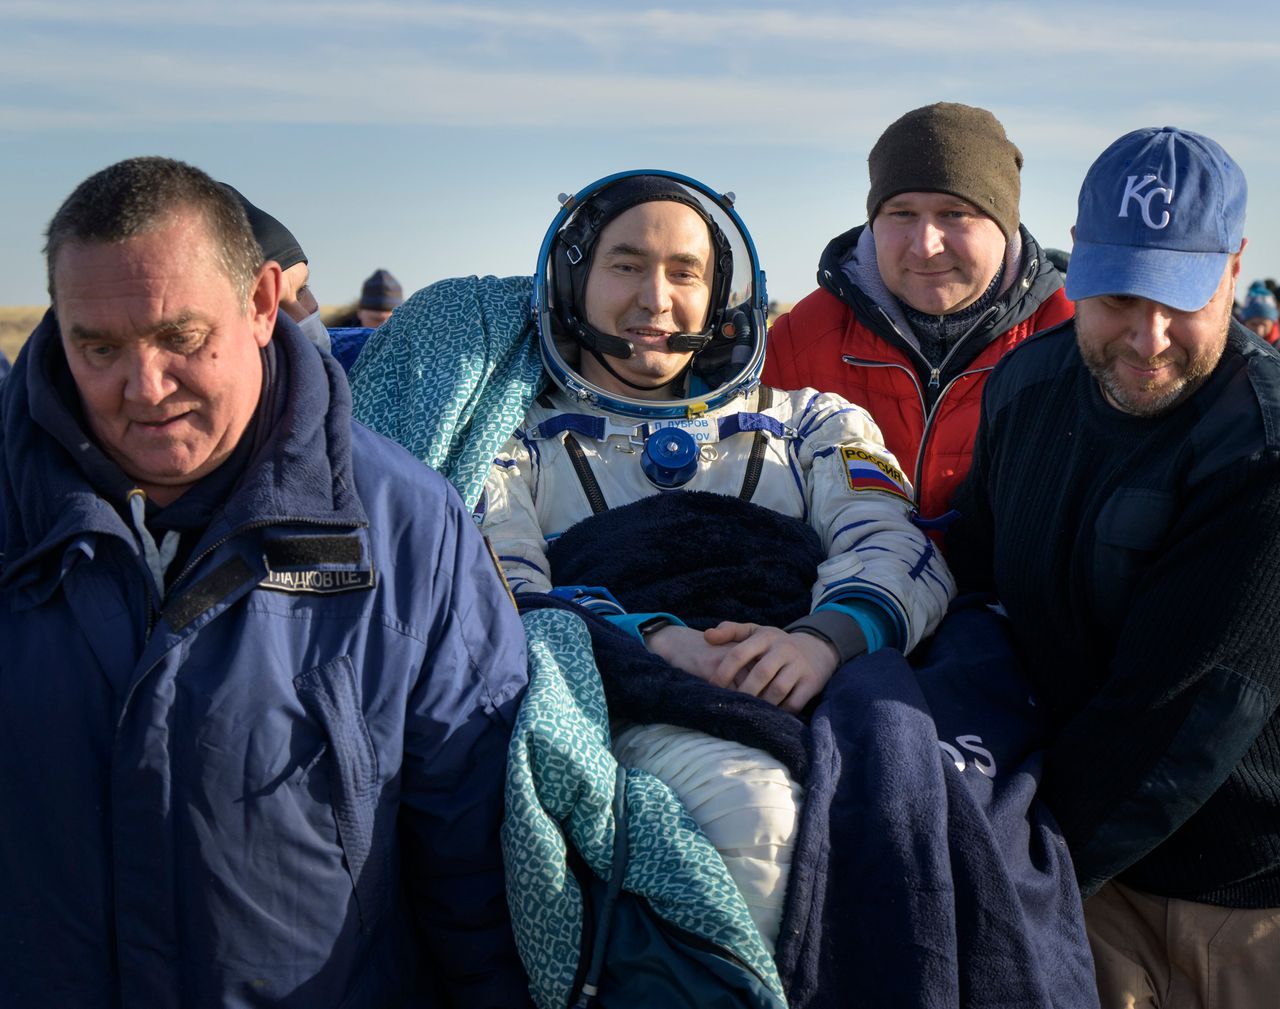 Ο Ρώσος κοσμοναύτης της Expedition 66 Πιότρ Ντουμπρόφ μεταφέρεται σε μια ιατρική σκηνή λίγο μετά την προσγείωση του μαζί με τα μέλη του πληρώματος Mαρκ Βάντε Χάι της NASA και Aντον Σκαπλέροφ της Roscosmos με το διαστημόπλοιό τους Soyuz MS-19 κοντά στην πόλη Zhezkazgan του Καζακστάν την Τετάρτη, 30 Μαρτίου. 2022.